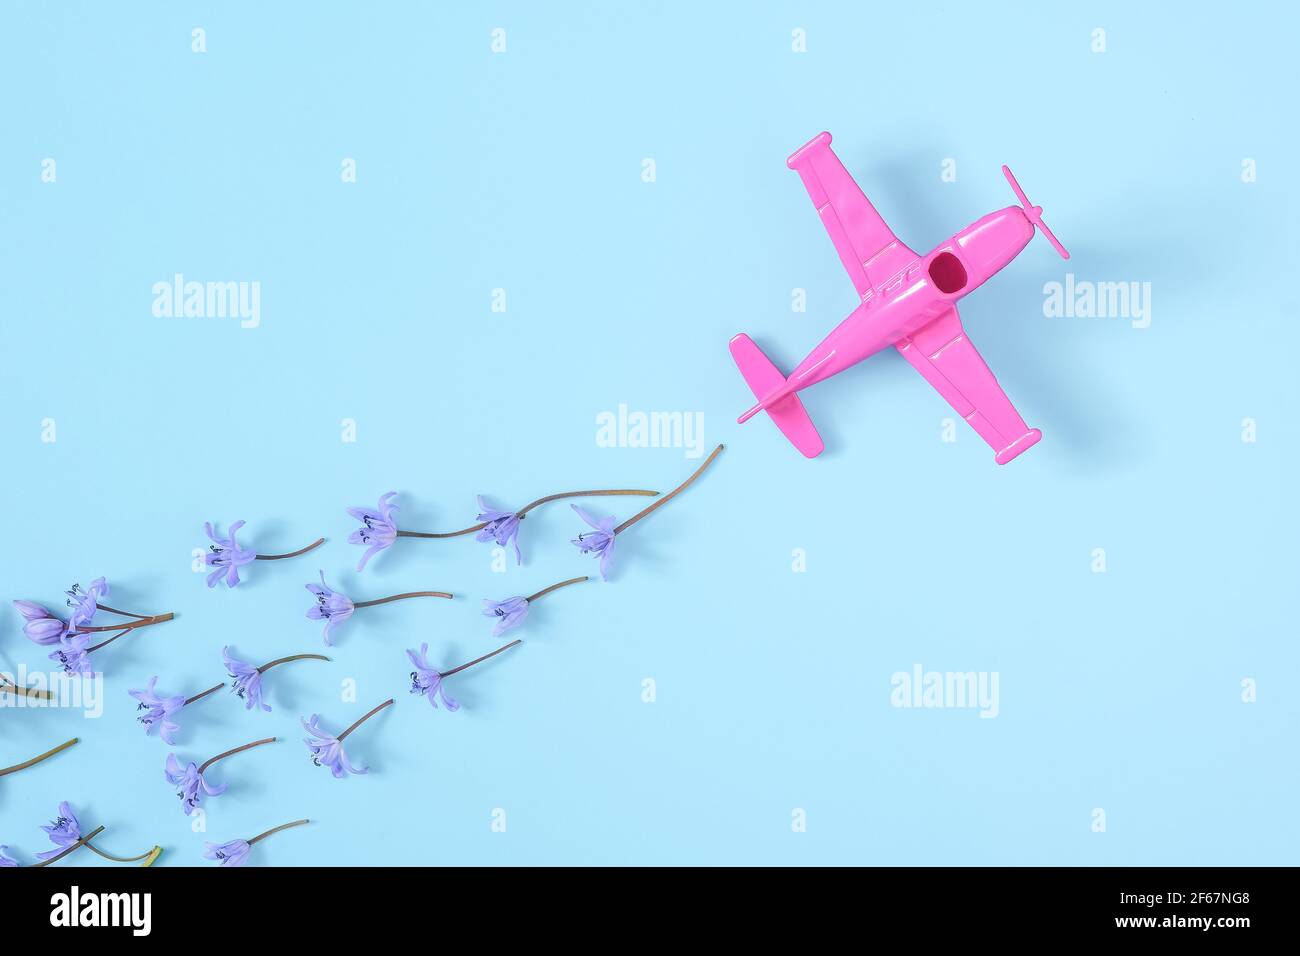 Rosa Flugzeug nimmt in eine scharfe Wendung auf blauem Hintergrund Stockfoto